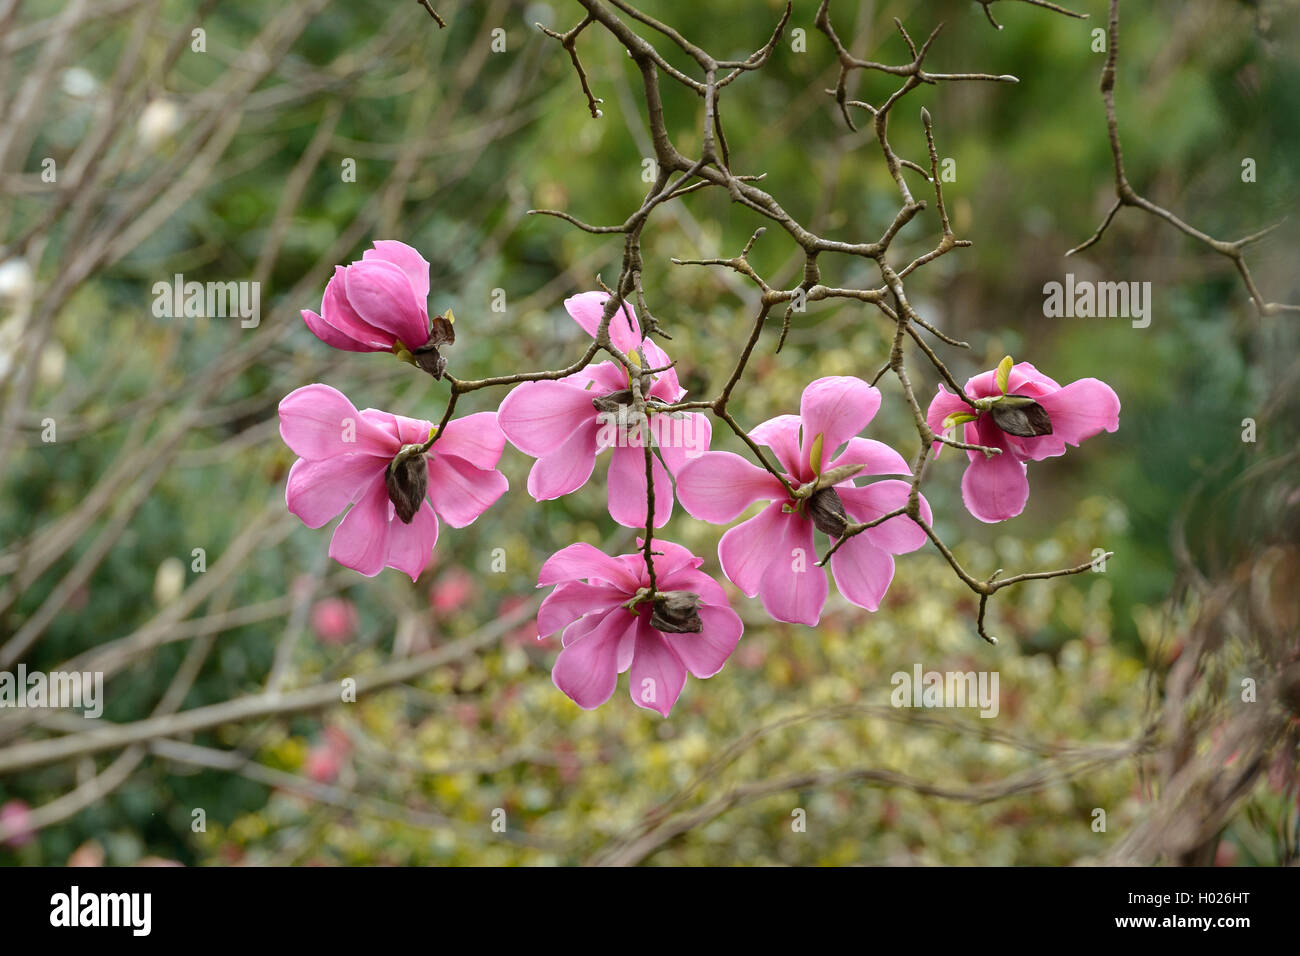 magnolia (Magnolia sprengeri var. diva, Magnolia sprengeri diva), var. diva Stock Photo